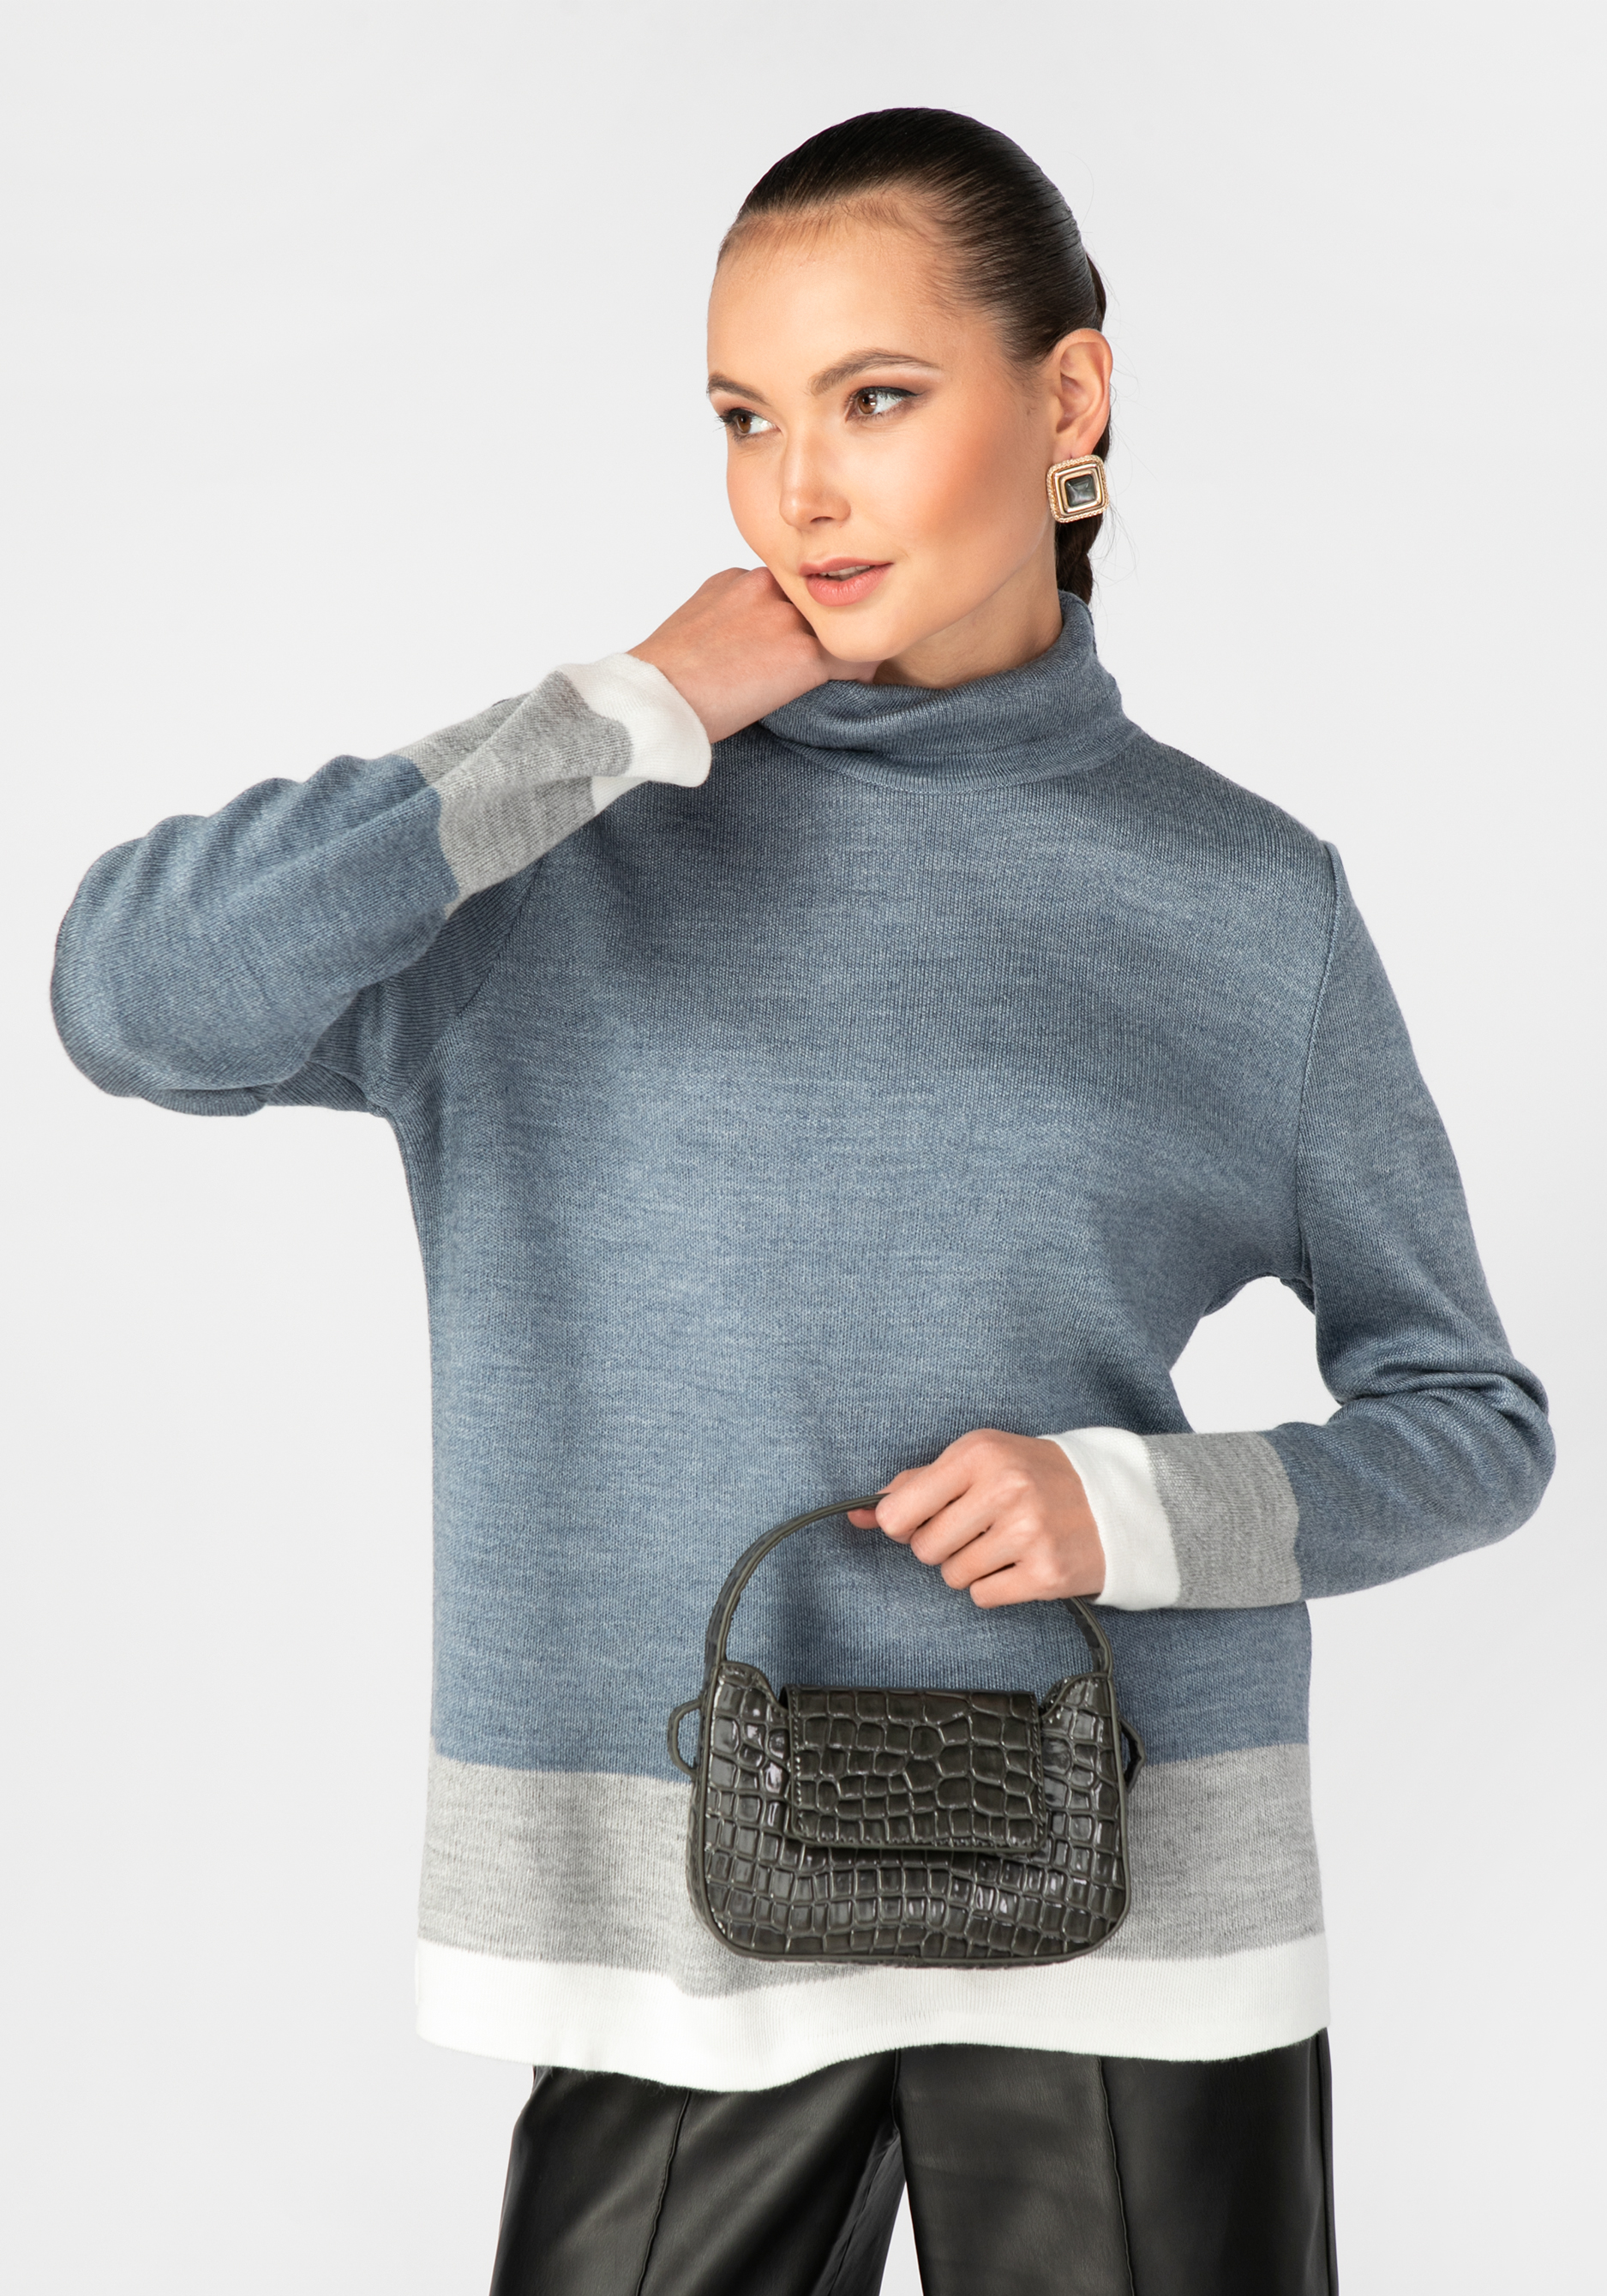 Свитер женский с контрастными полосами triol свитер помпончики m темно серый